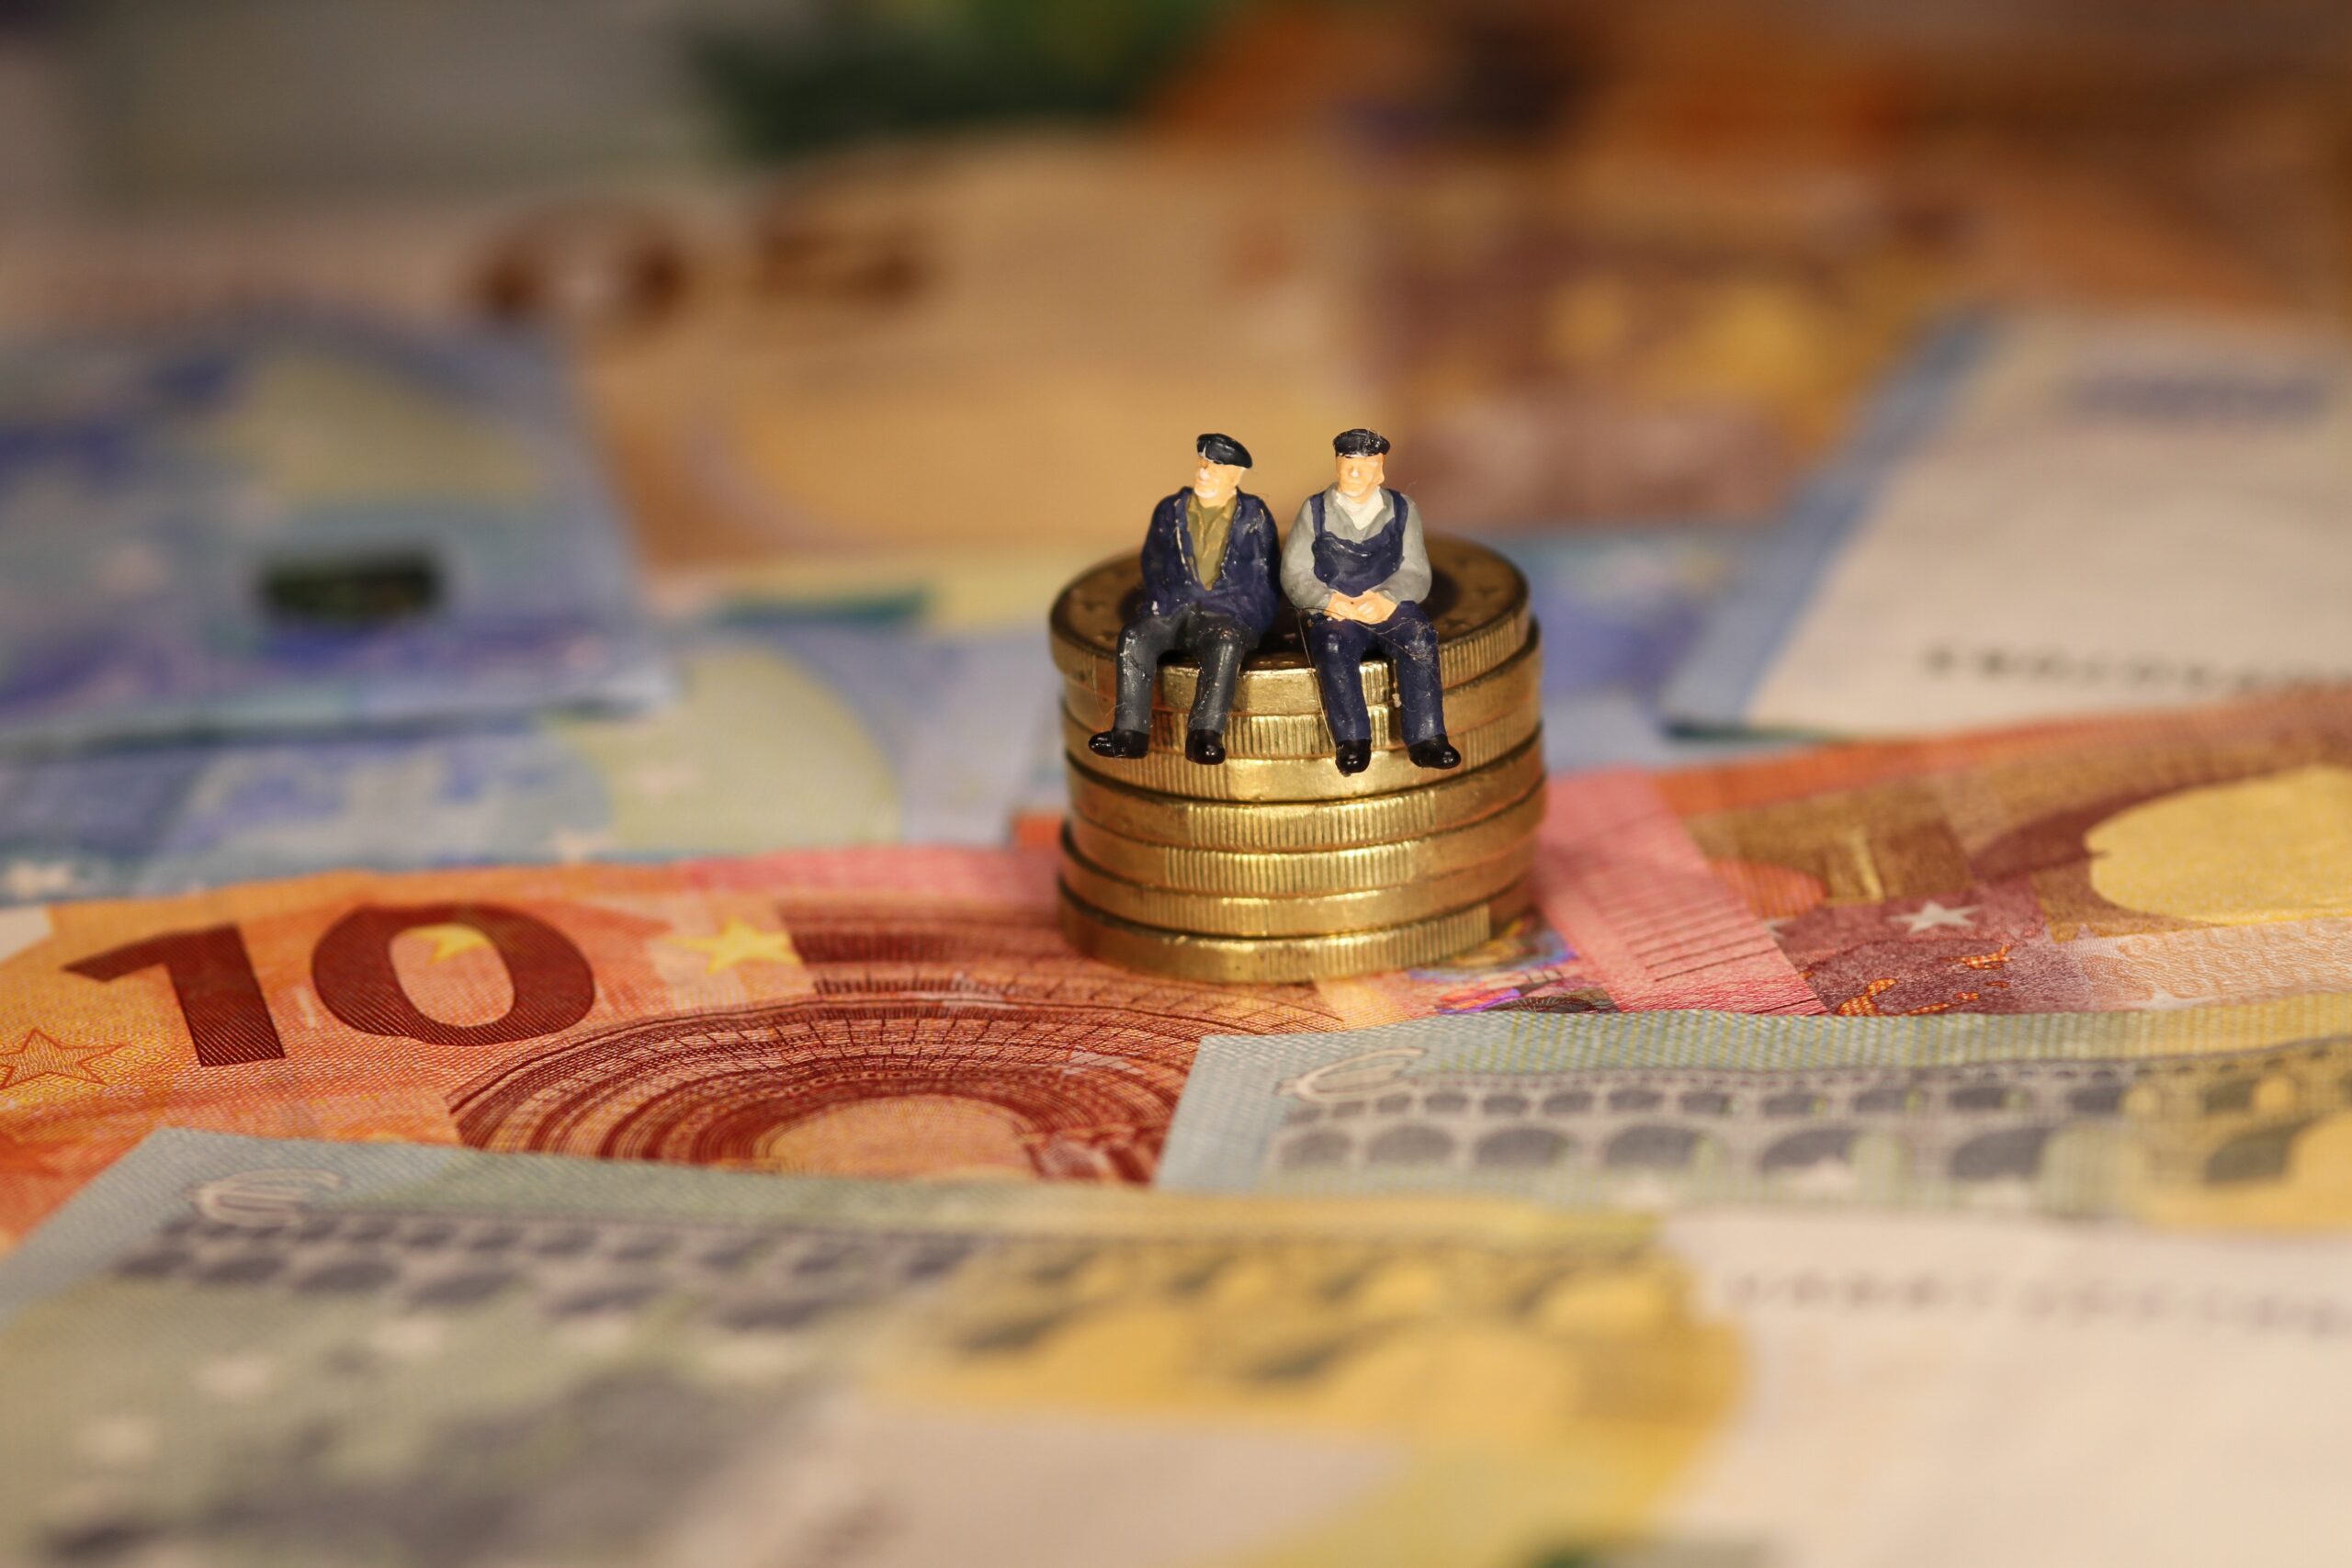 Zwei Figuren, die auf einem Stapel von 1 Euro-Münzen sitzen